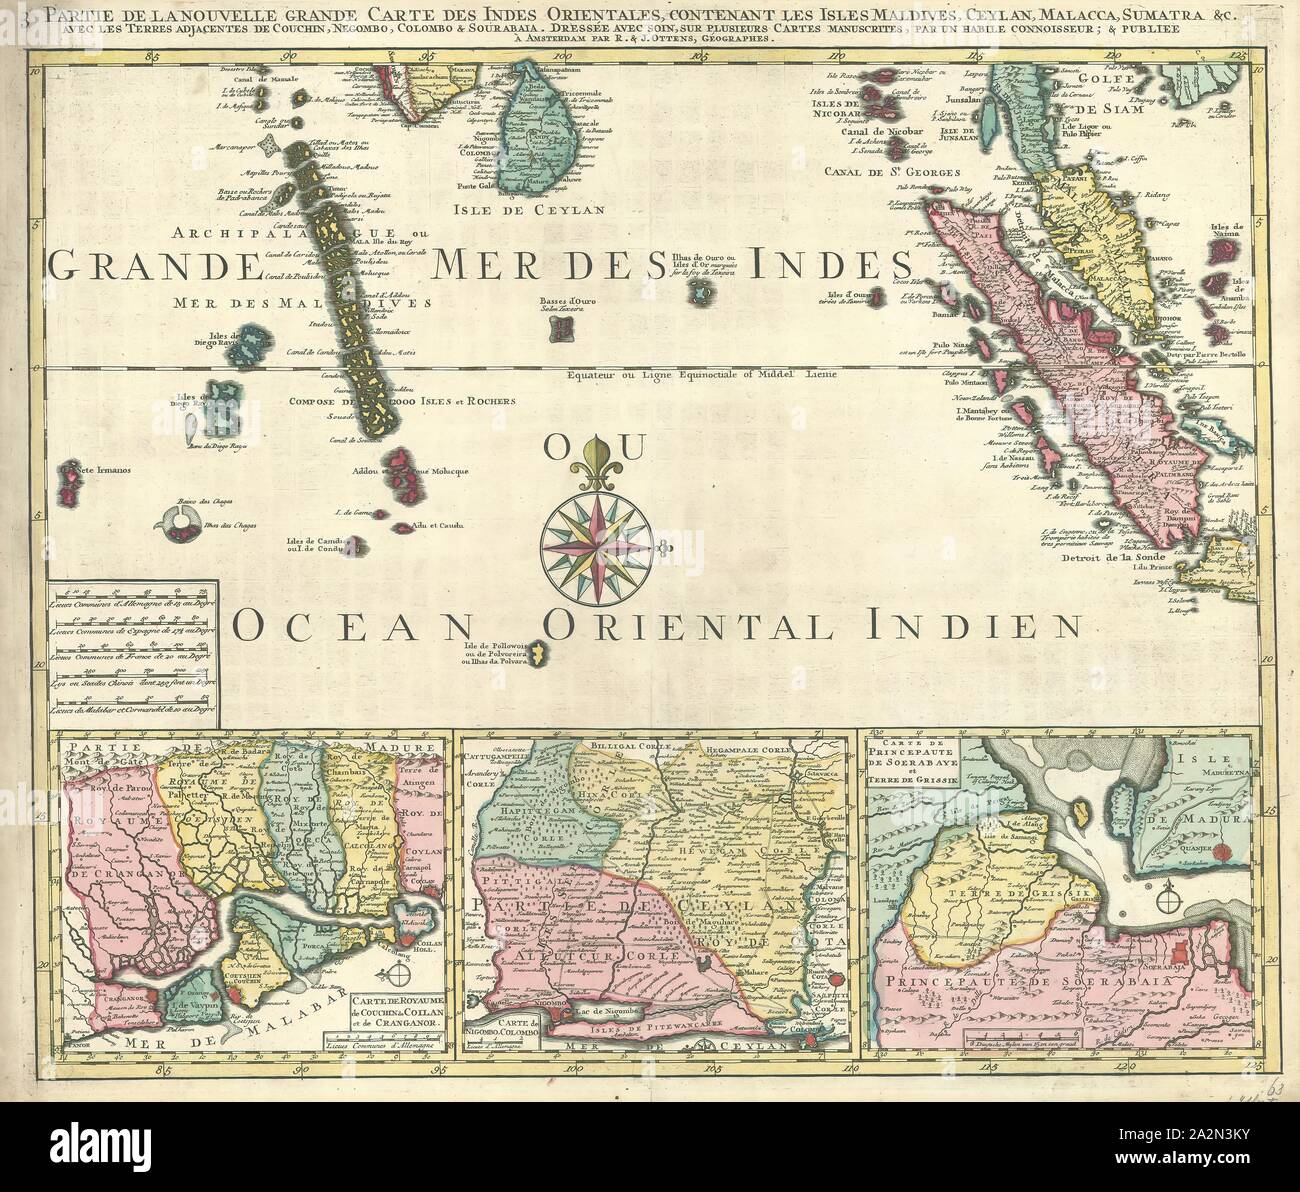 Karte, 3 Partie de la nouvelle Grande Carte des Indes orientales, habile Kenner Un, Kupferstich Stockfoto